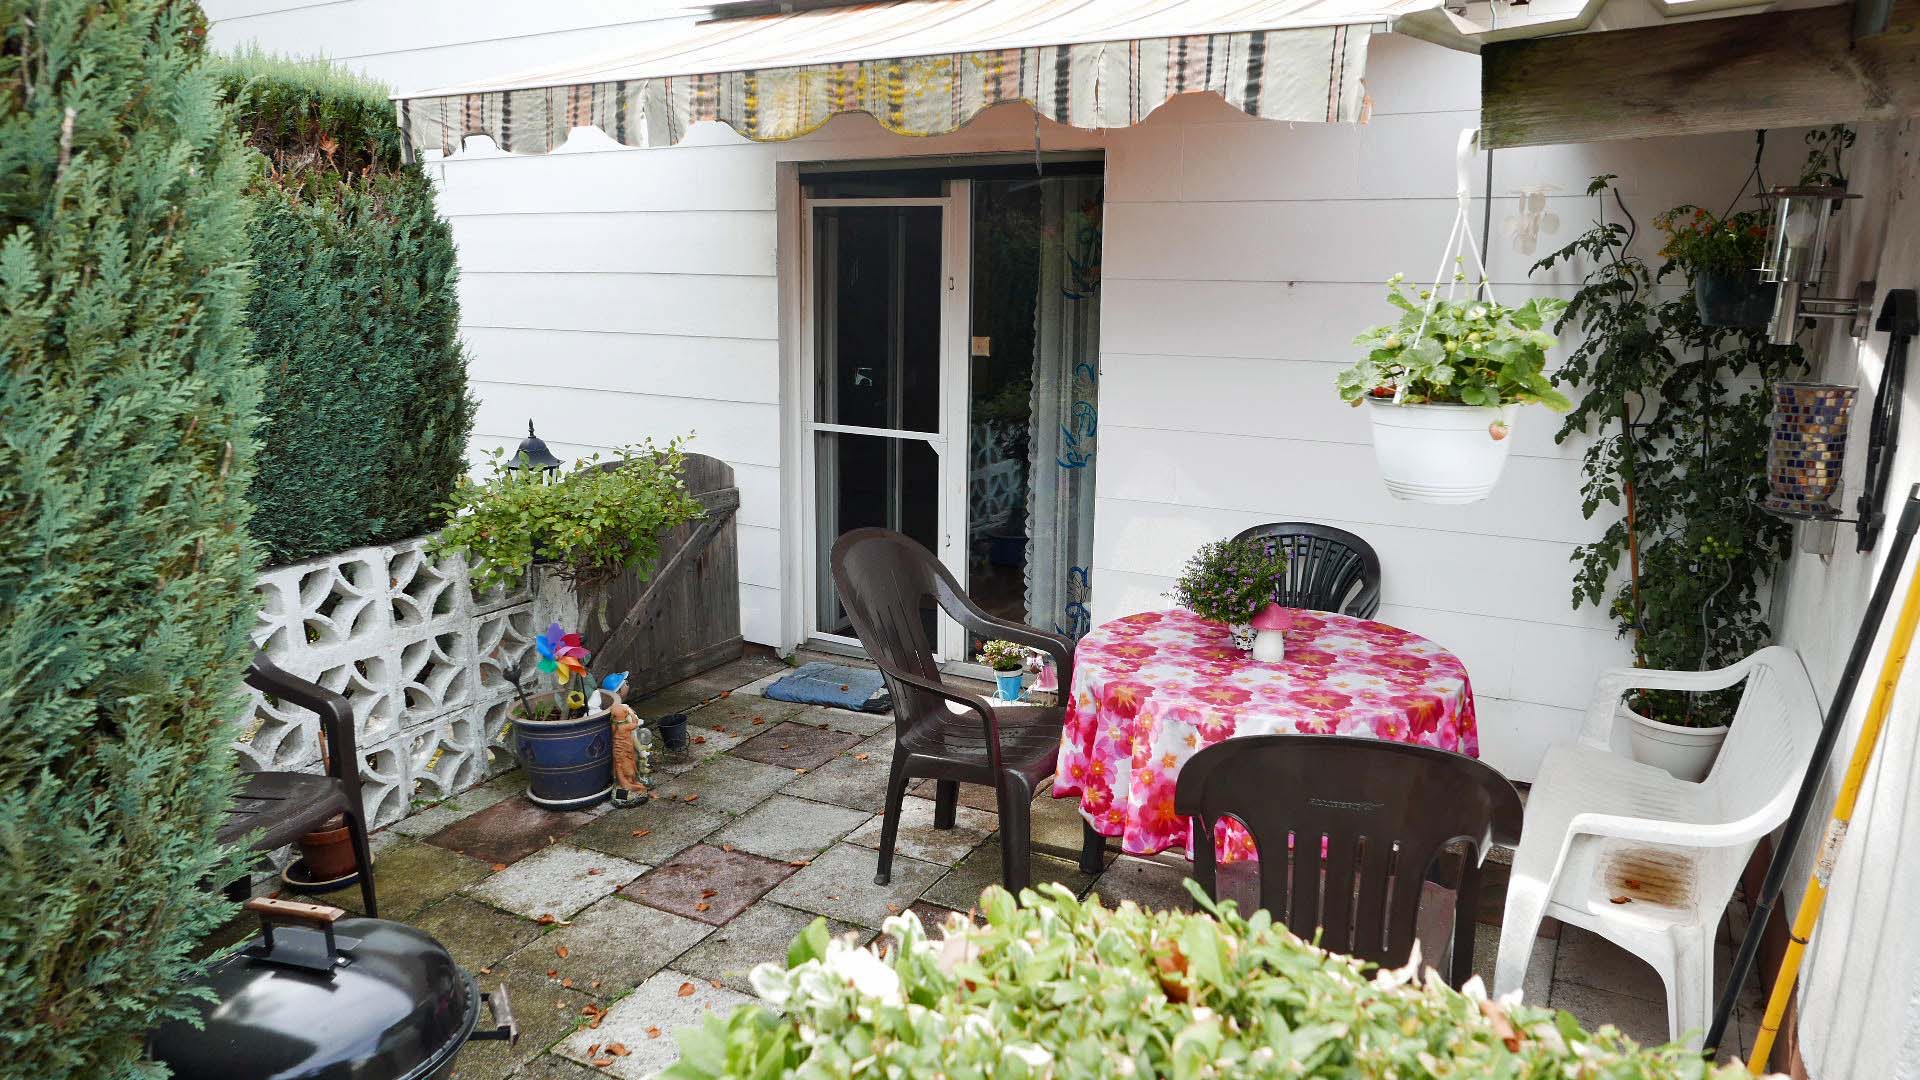 Verkauft: Einfamilienhaus mit Garage, ...zur gemütlichen Terrasse und der...